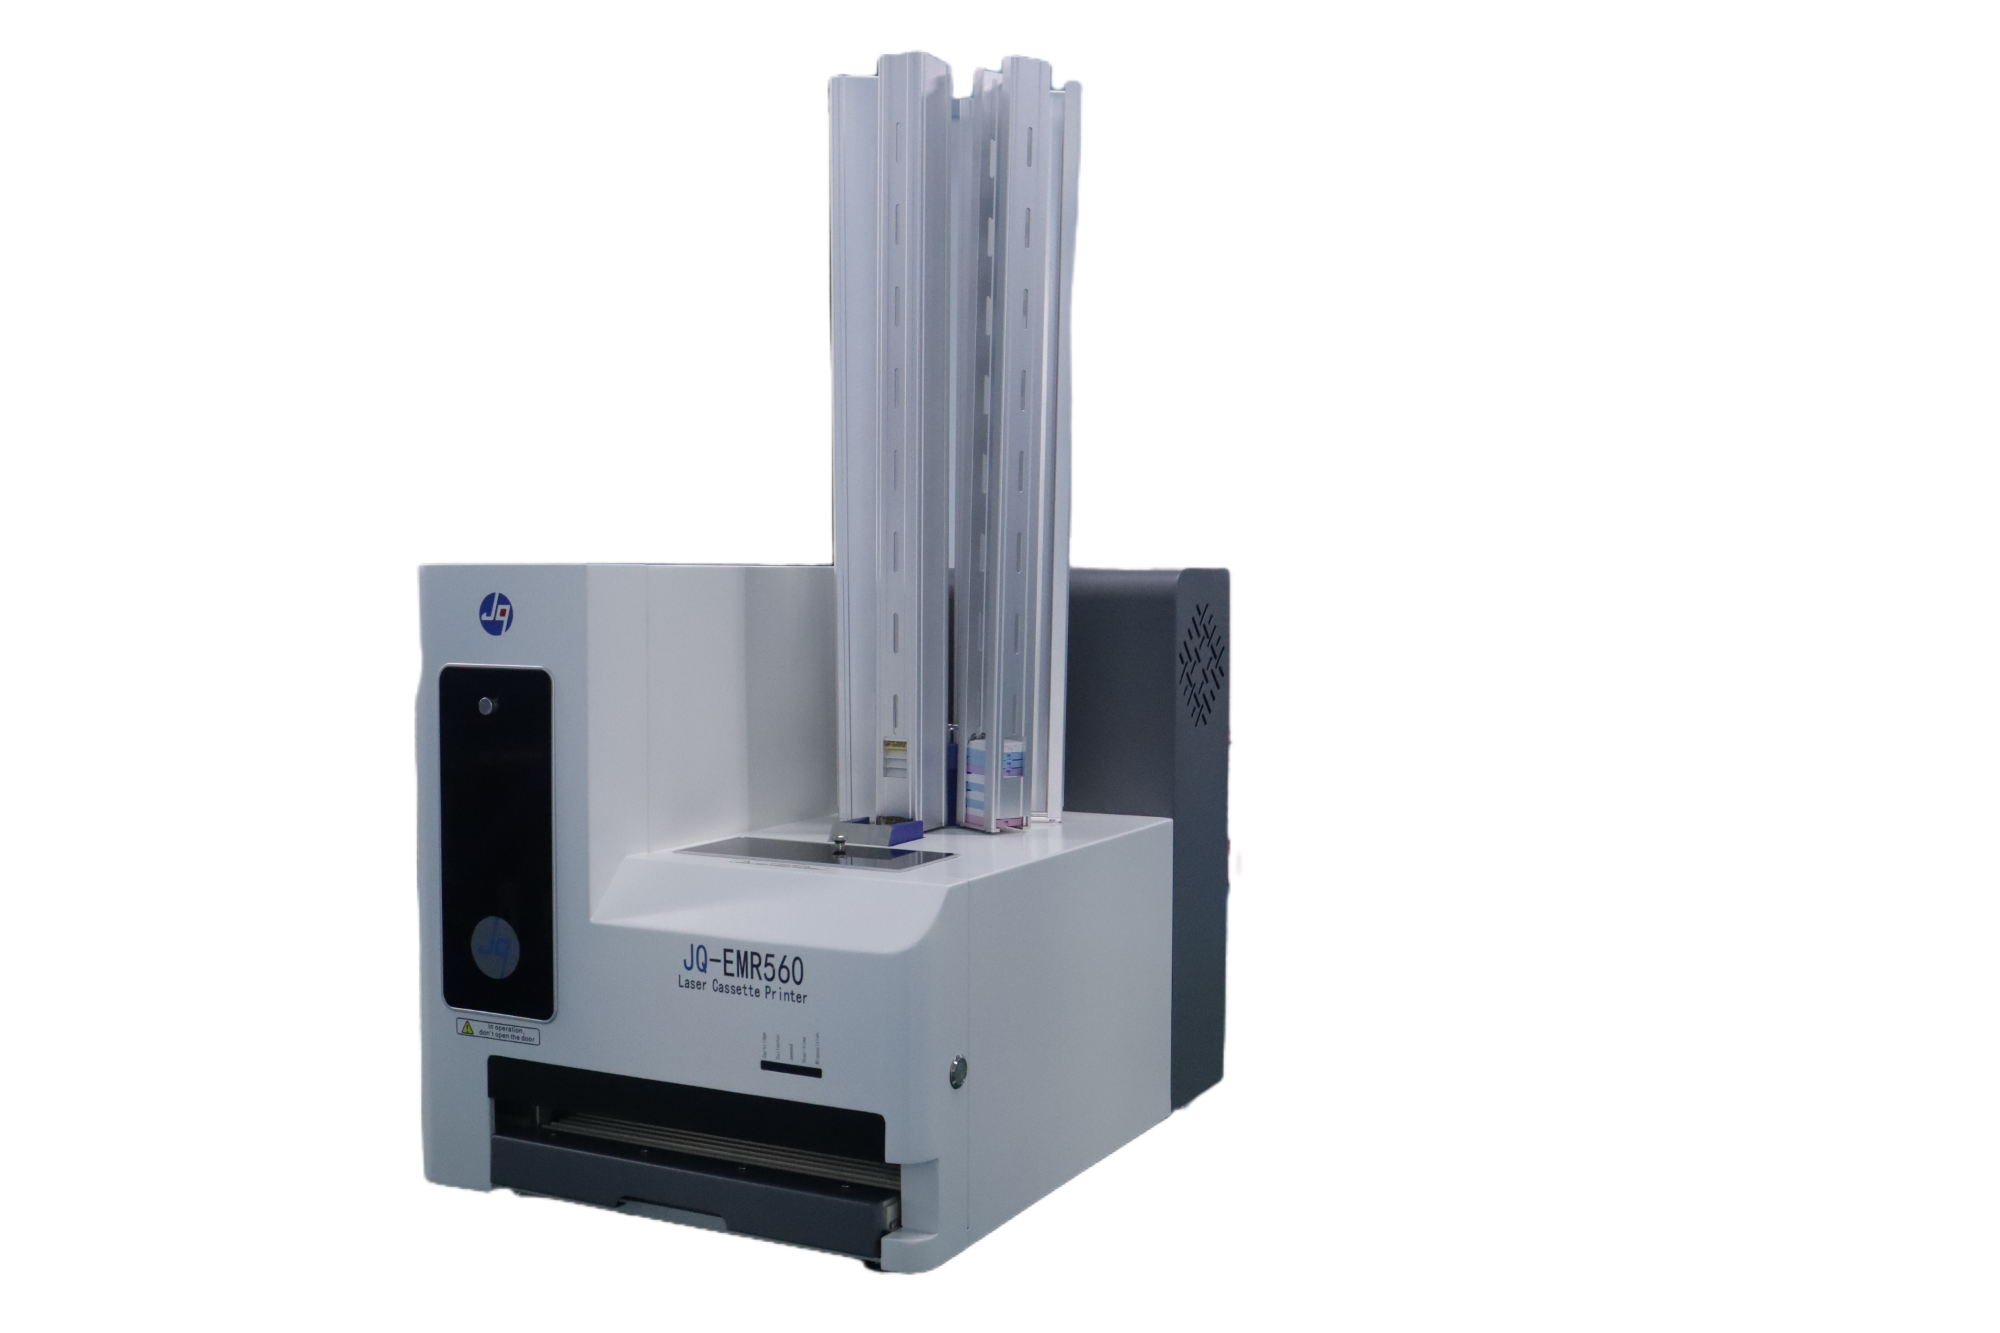 Tissue Cassette Laser Printer : JQ-EMR-560